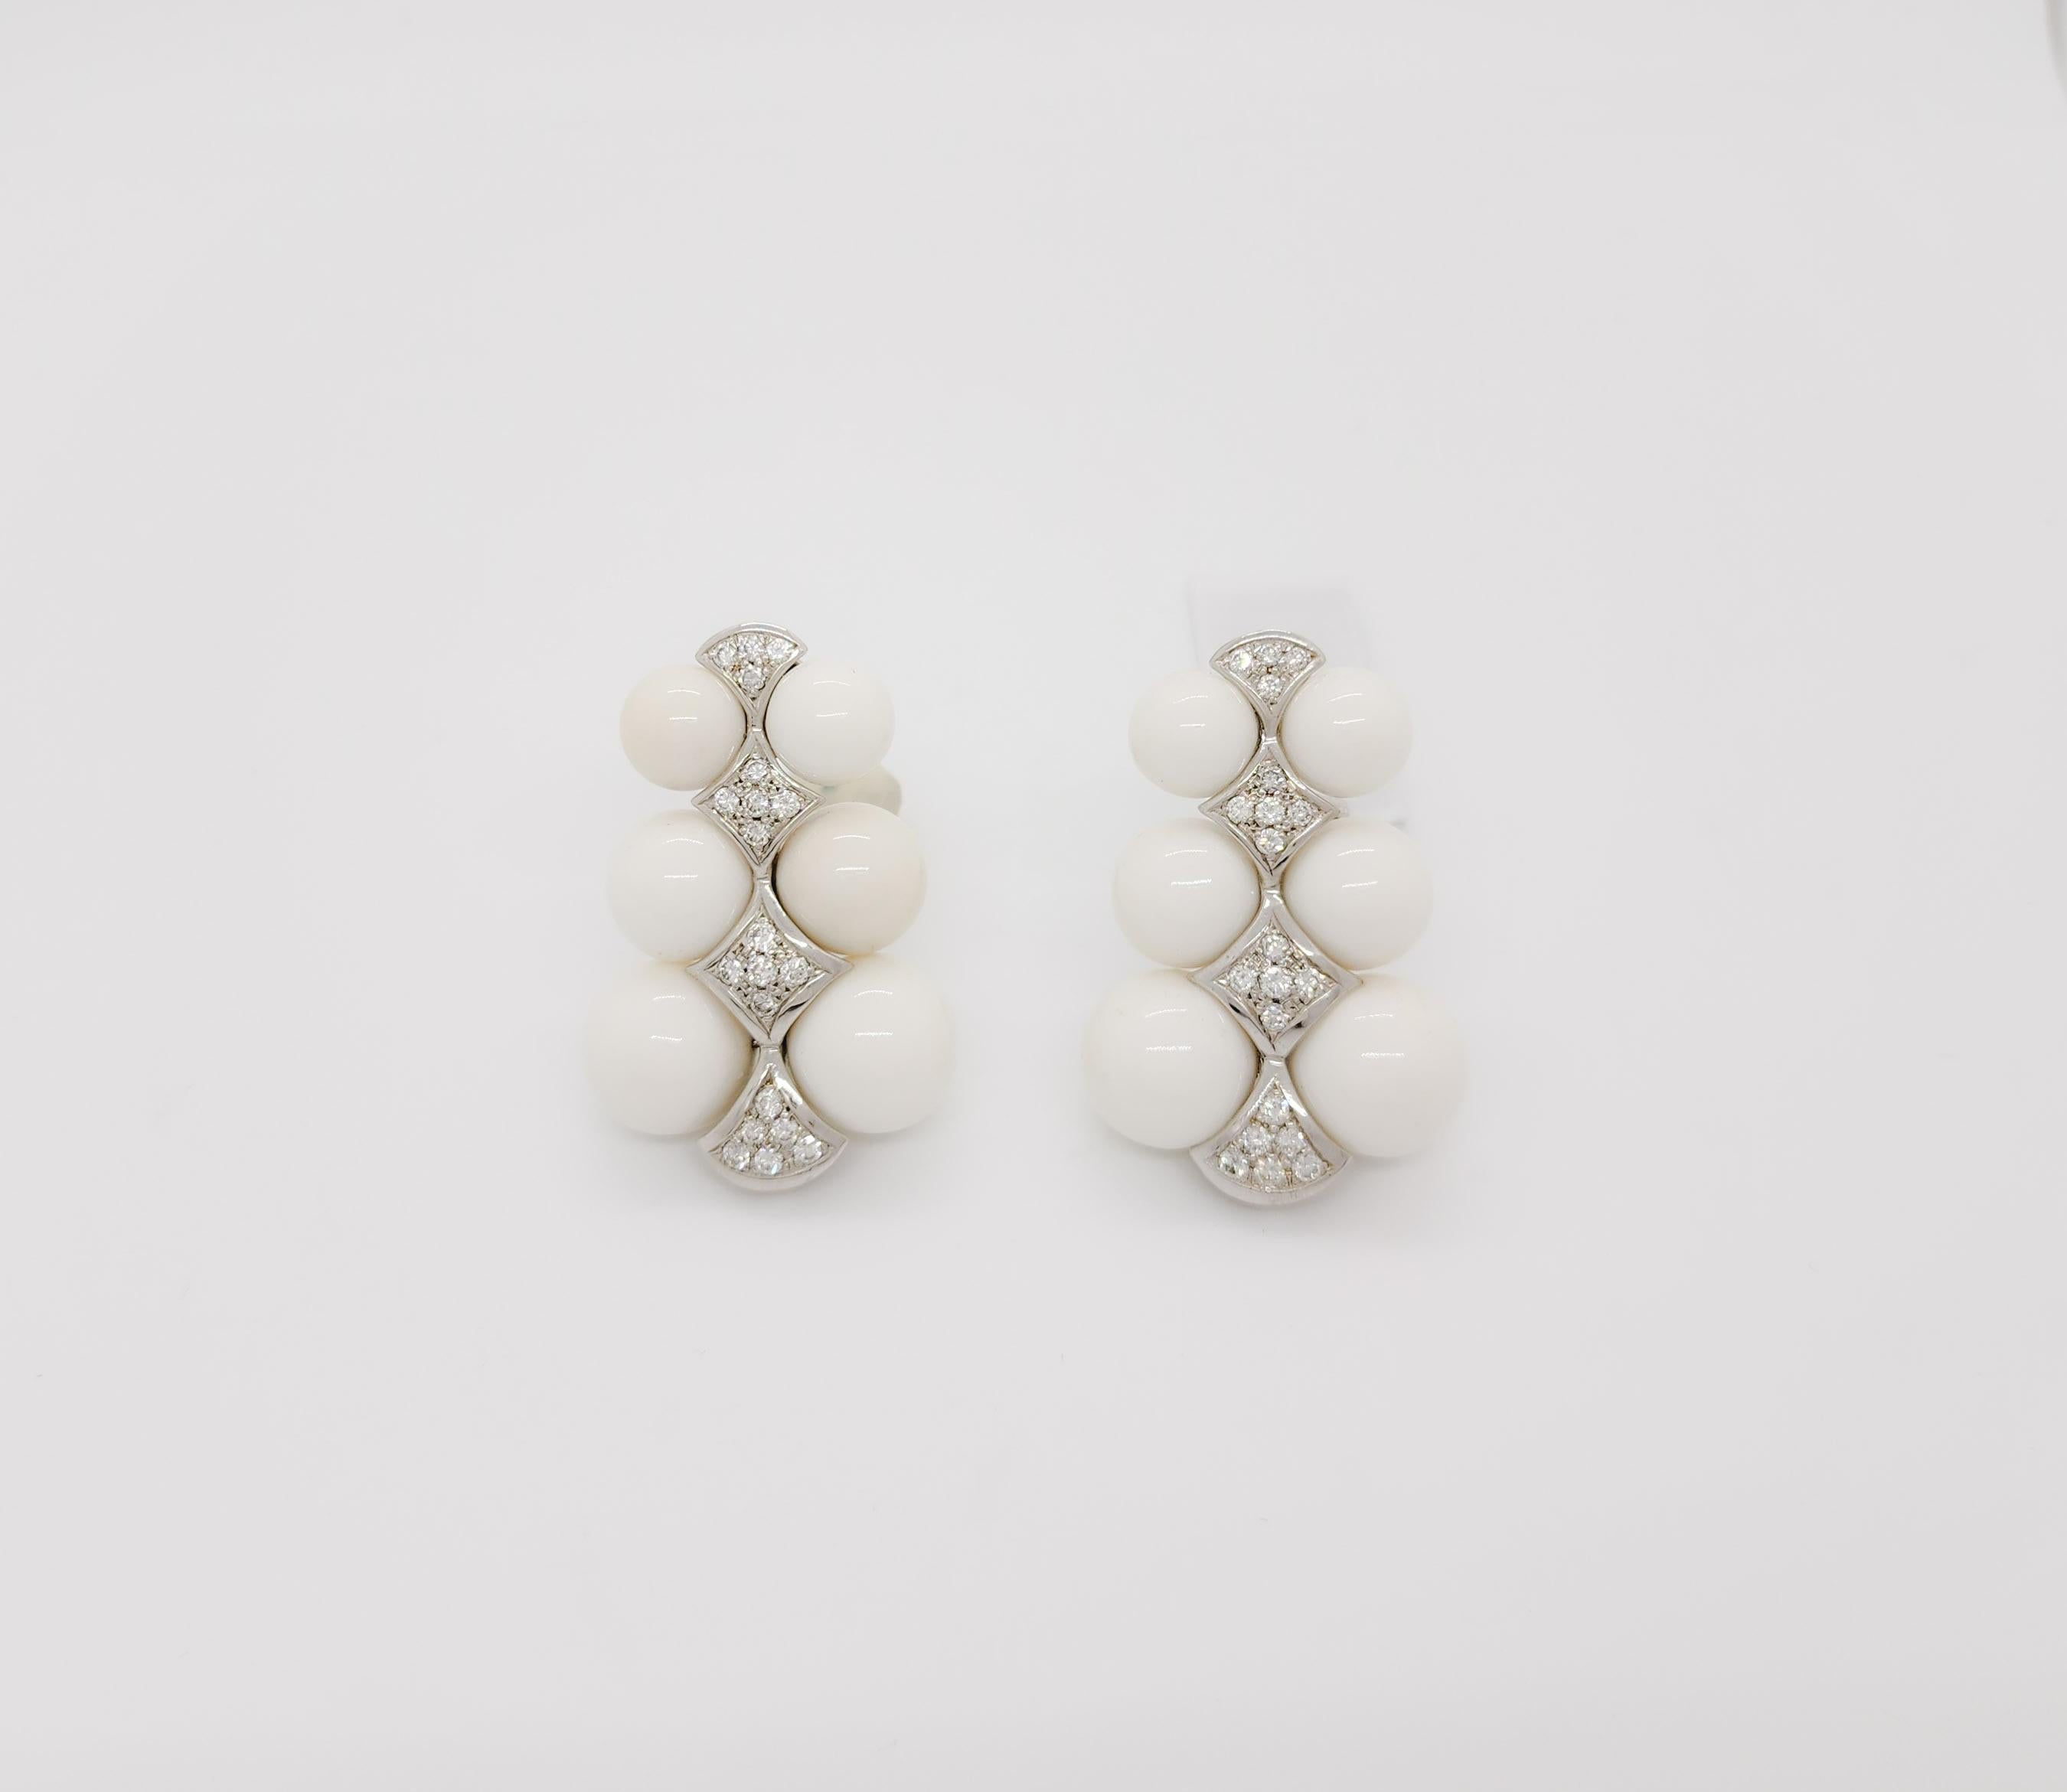 Schöner Nachlass Tallarico baumeln Ohrringe mit guter Qualität, weiß, und hellen Diamanten Runden.  Handgefertigt aus 18k Weißgold.  Diese Ohrringe sind witzig, lassen sich leicht zu allem tragen und sind ein echtes Statement!